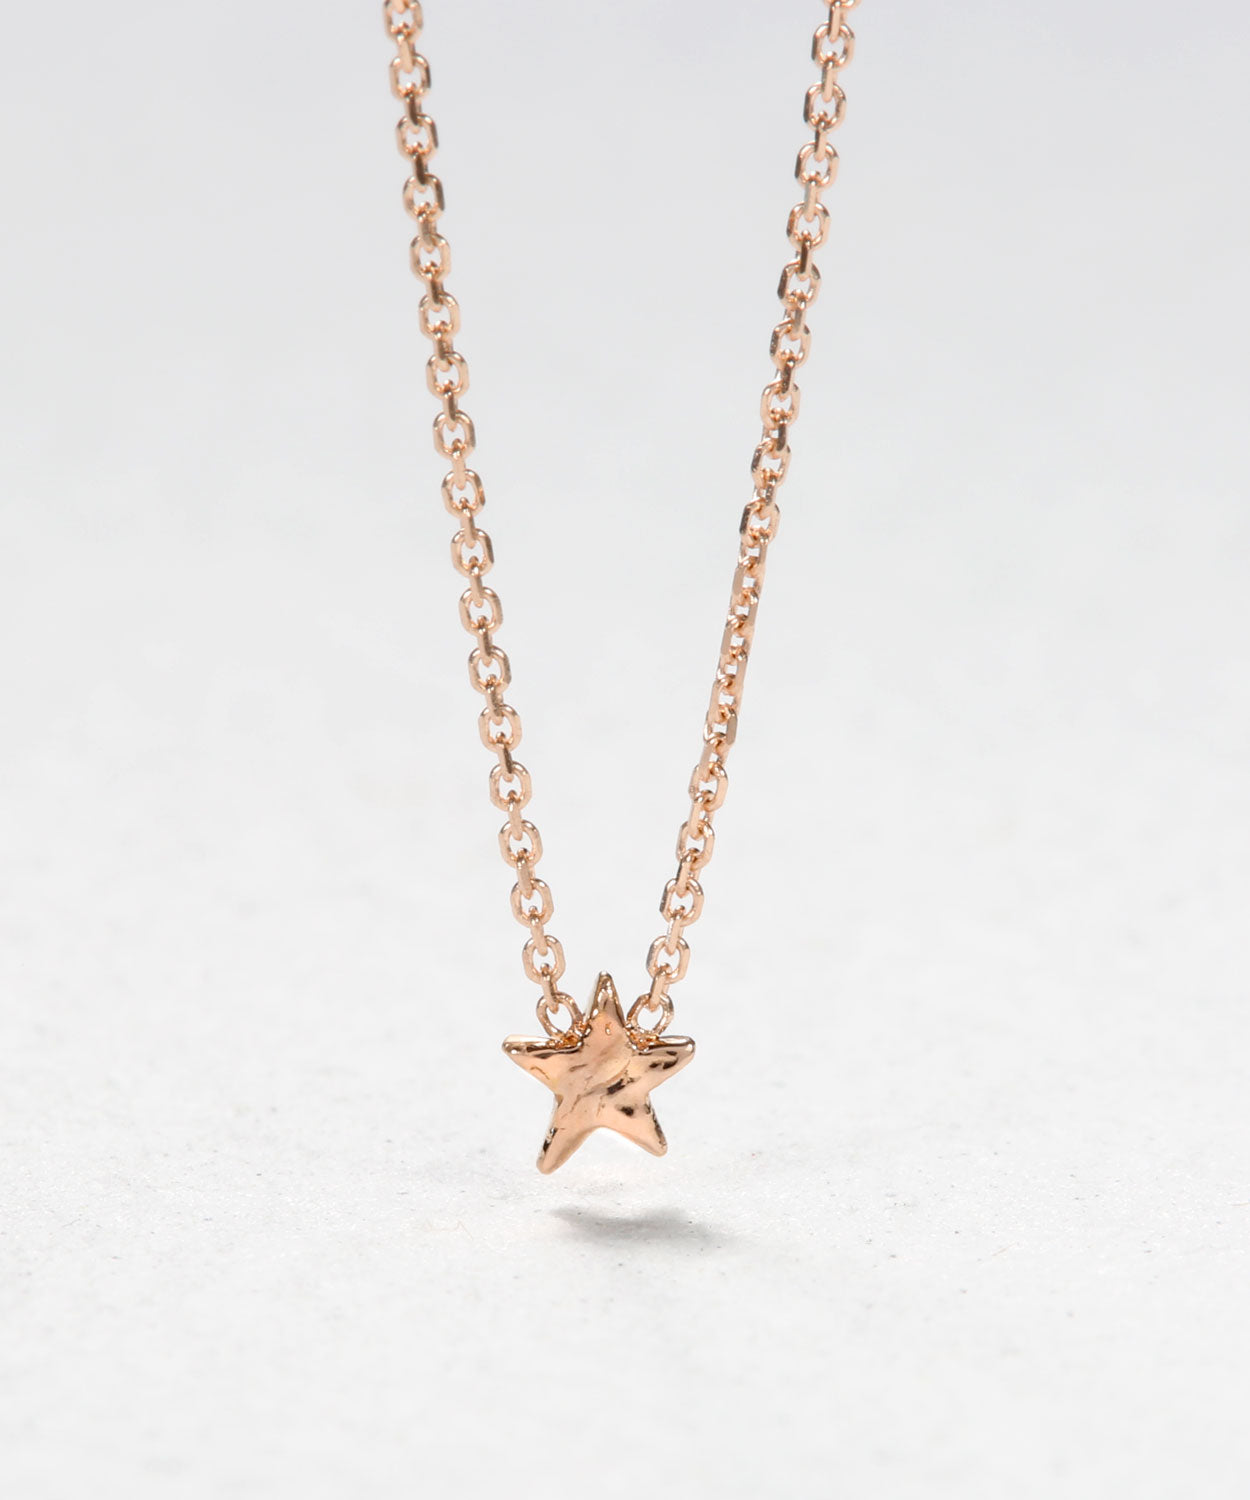 Twinkle Little Star Necklace